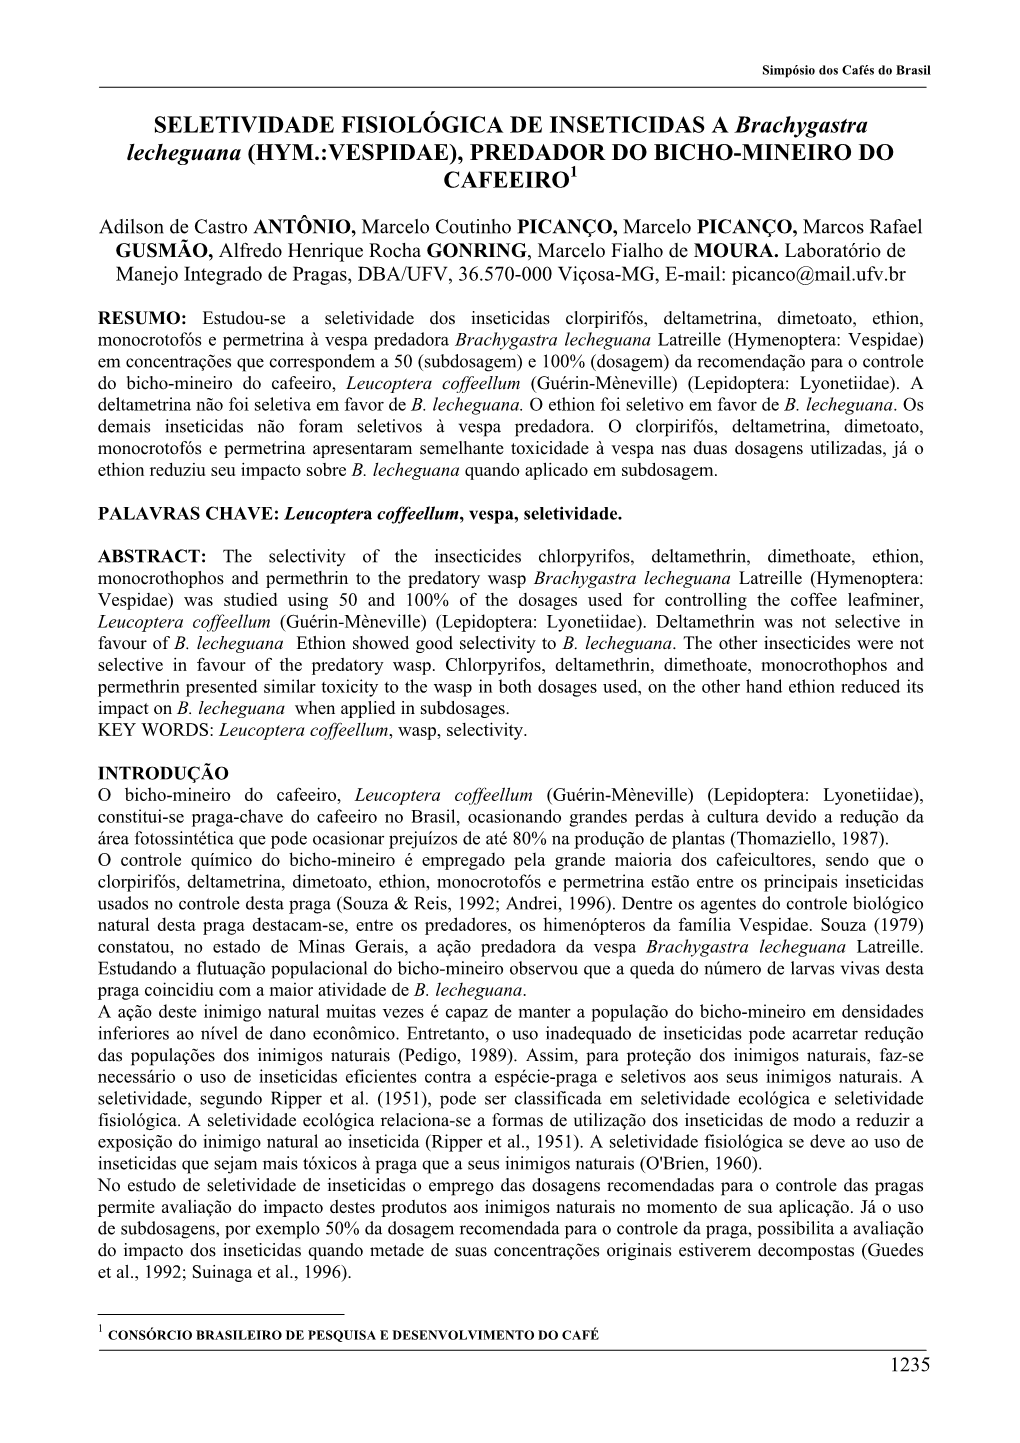 SELETIVIDADE FISIOLÓGICA DE INSETICIDAS a Brachygastra Lecheguana (HYM.:VESPIDAE), PREDADOR DO BICHO-MINEIRO DO CAFEEIRO1